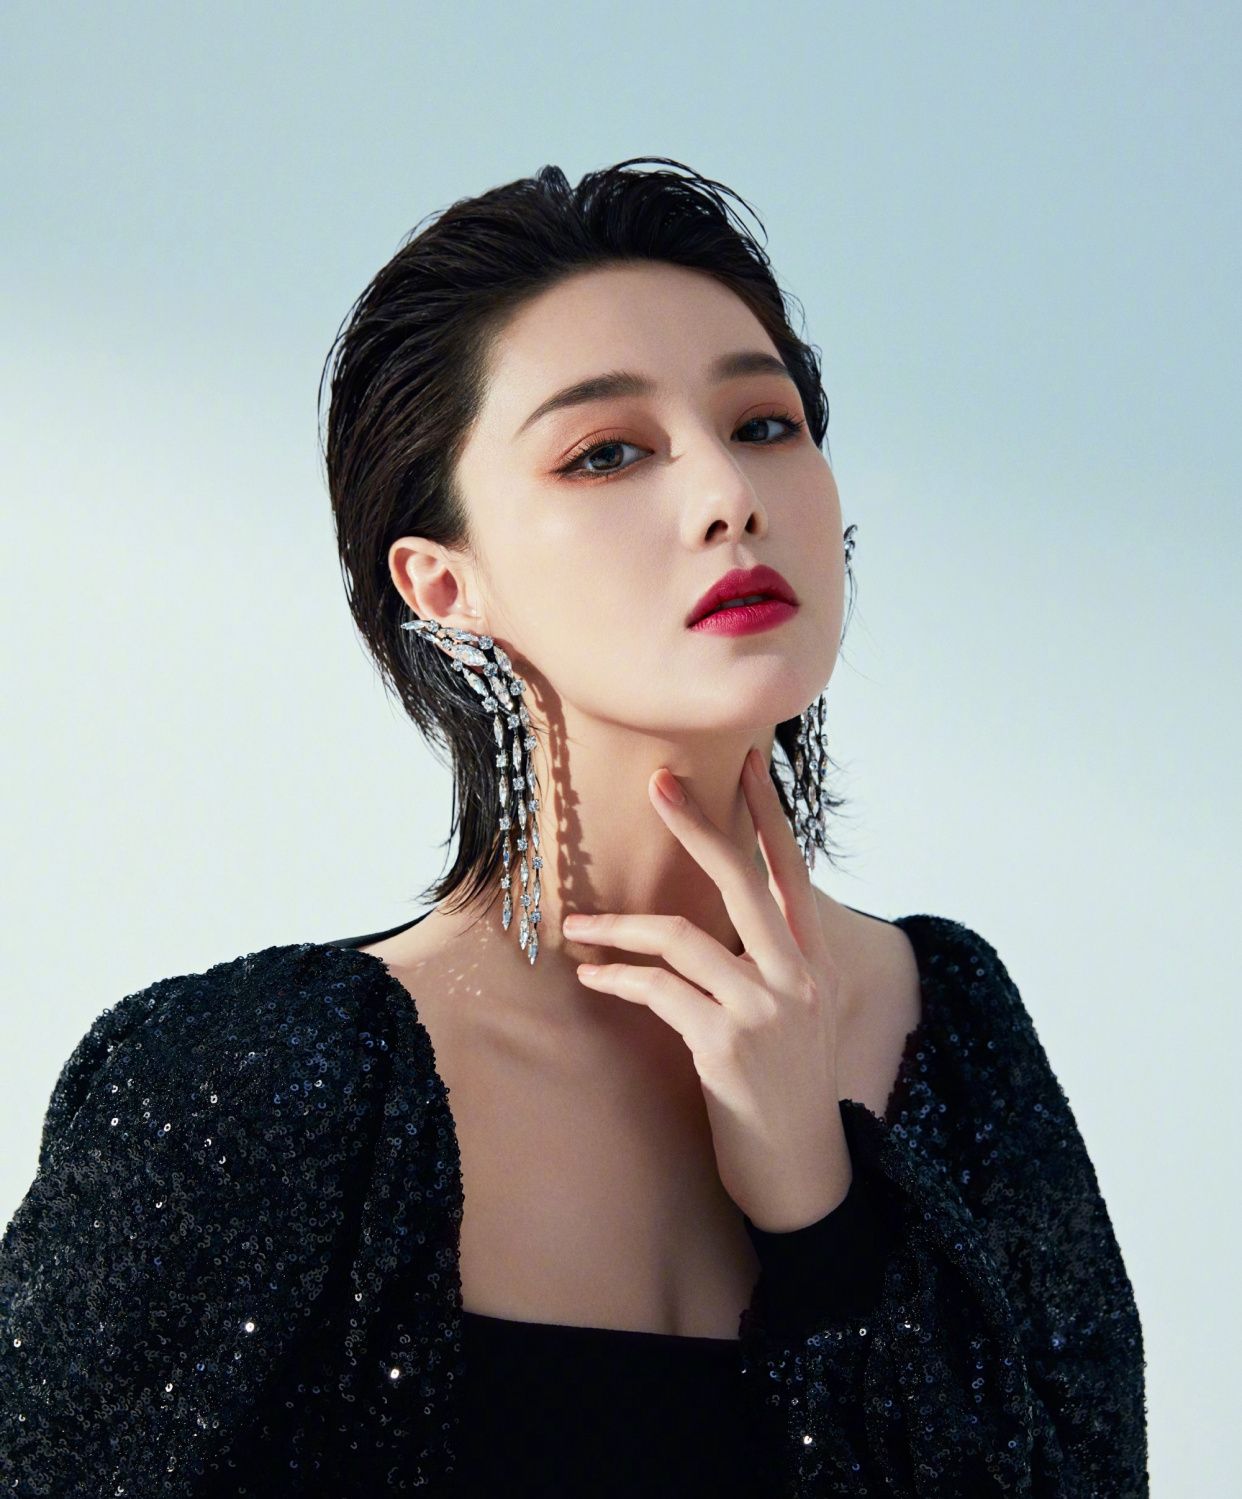 张馨予在微博发布一组黑色一字领礼服,搭配流苏耳饰,高贵典雅